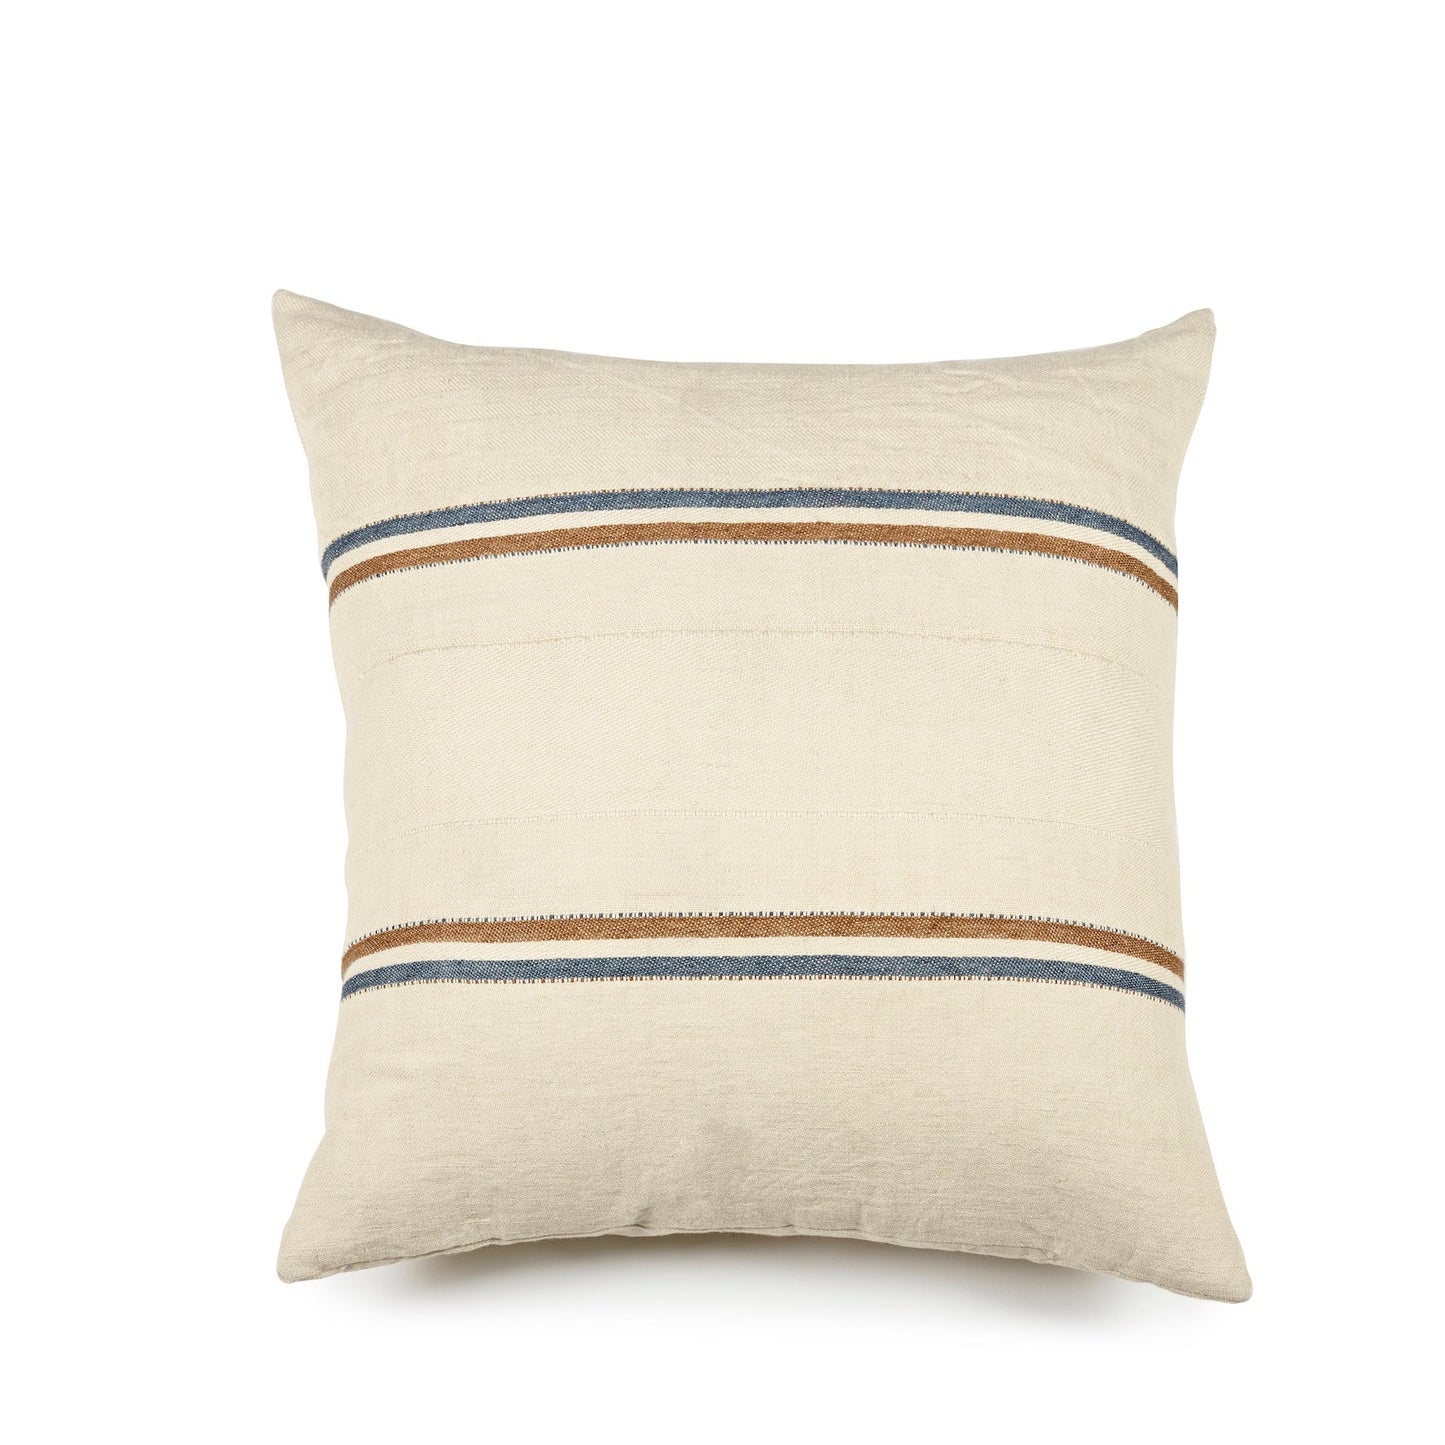 Cushion cover in 100% European linen - Auburn